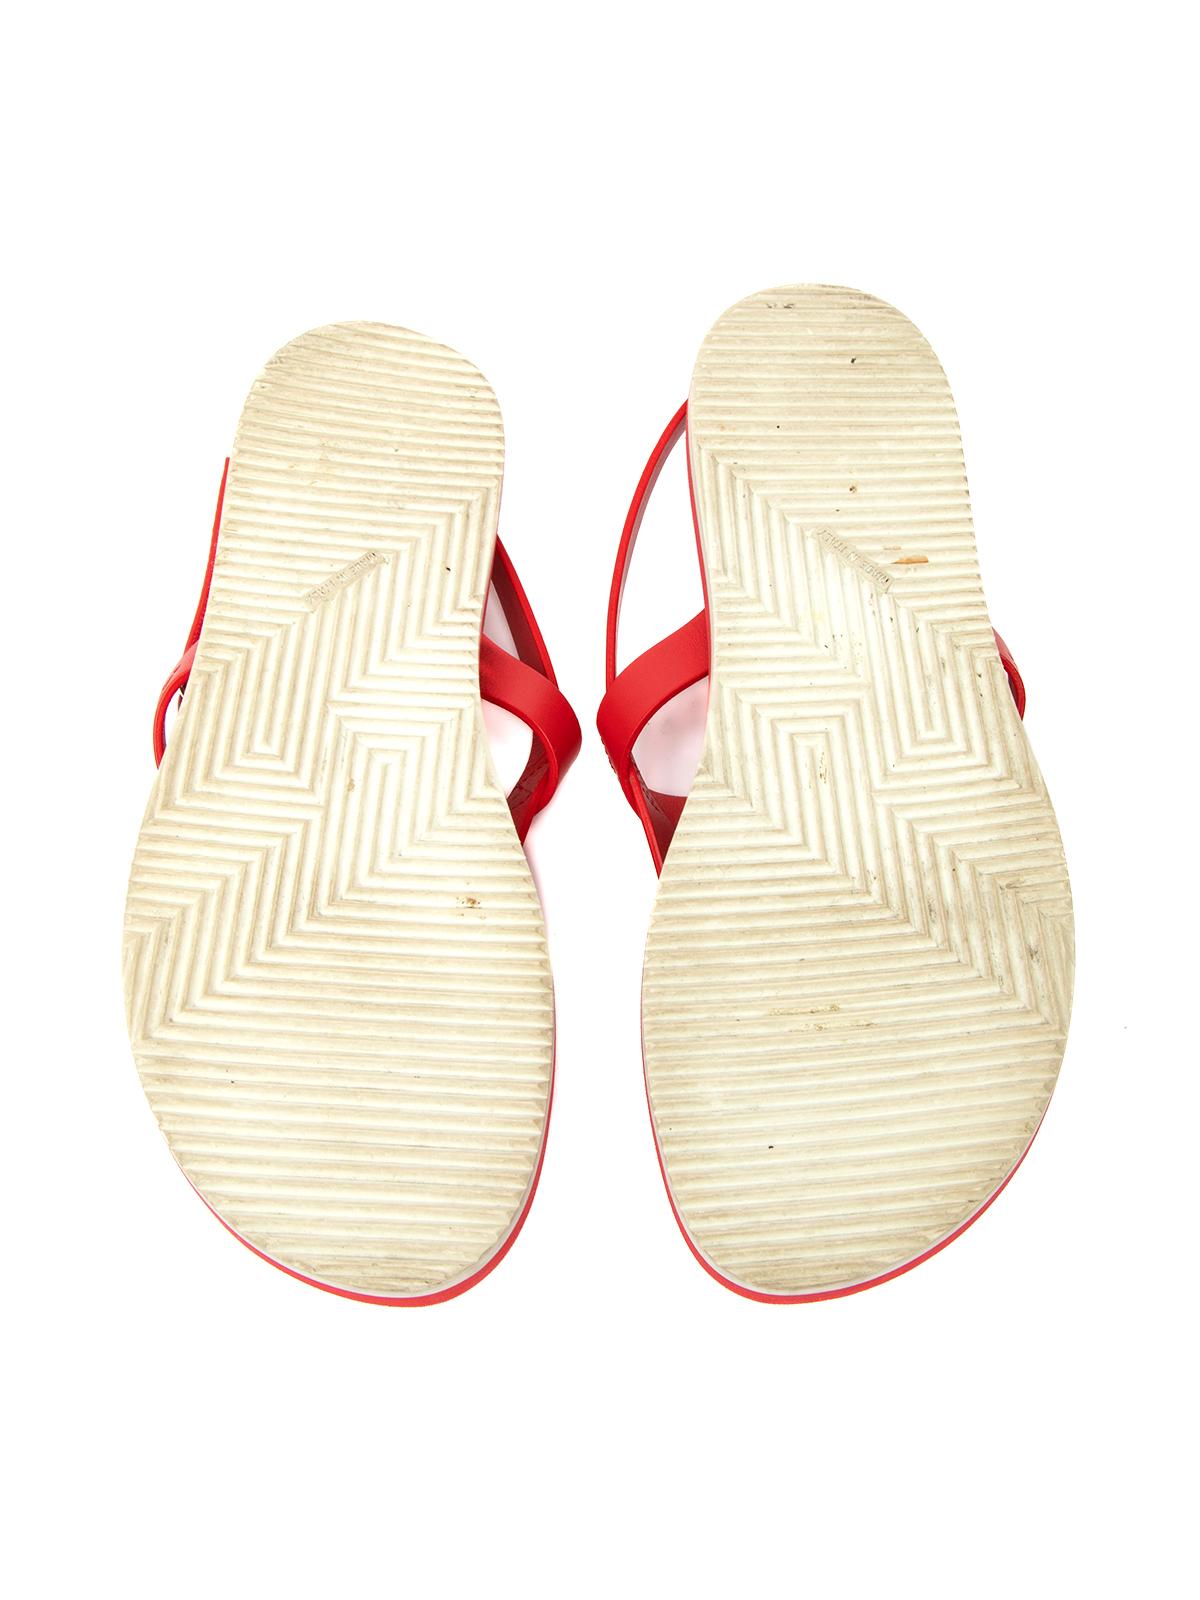 Red Pre-Loved Hermès Women's Rubber Beach Flip Flops